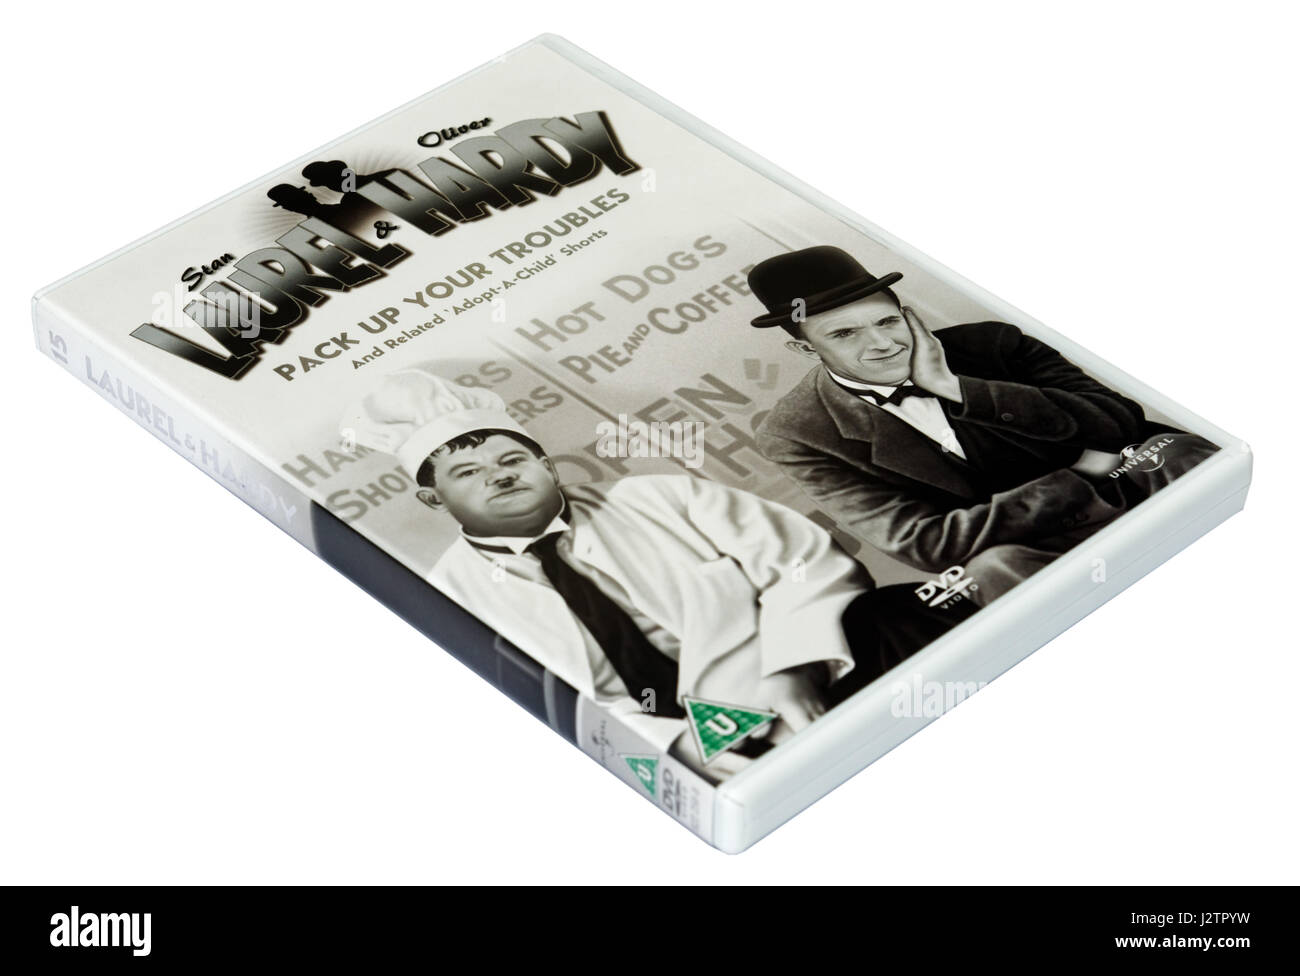 Imballare i vostri problemi: a Laurel e Hardy DVD di cortometraggi Foto Stock